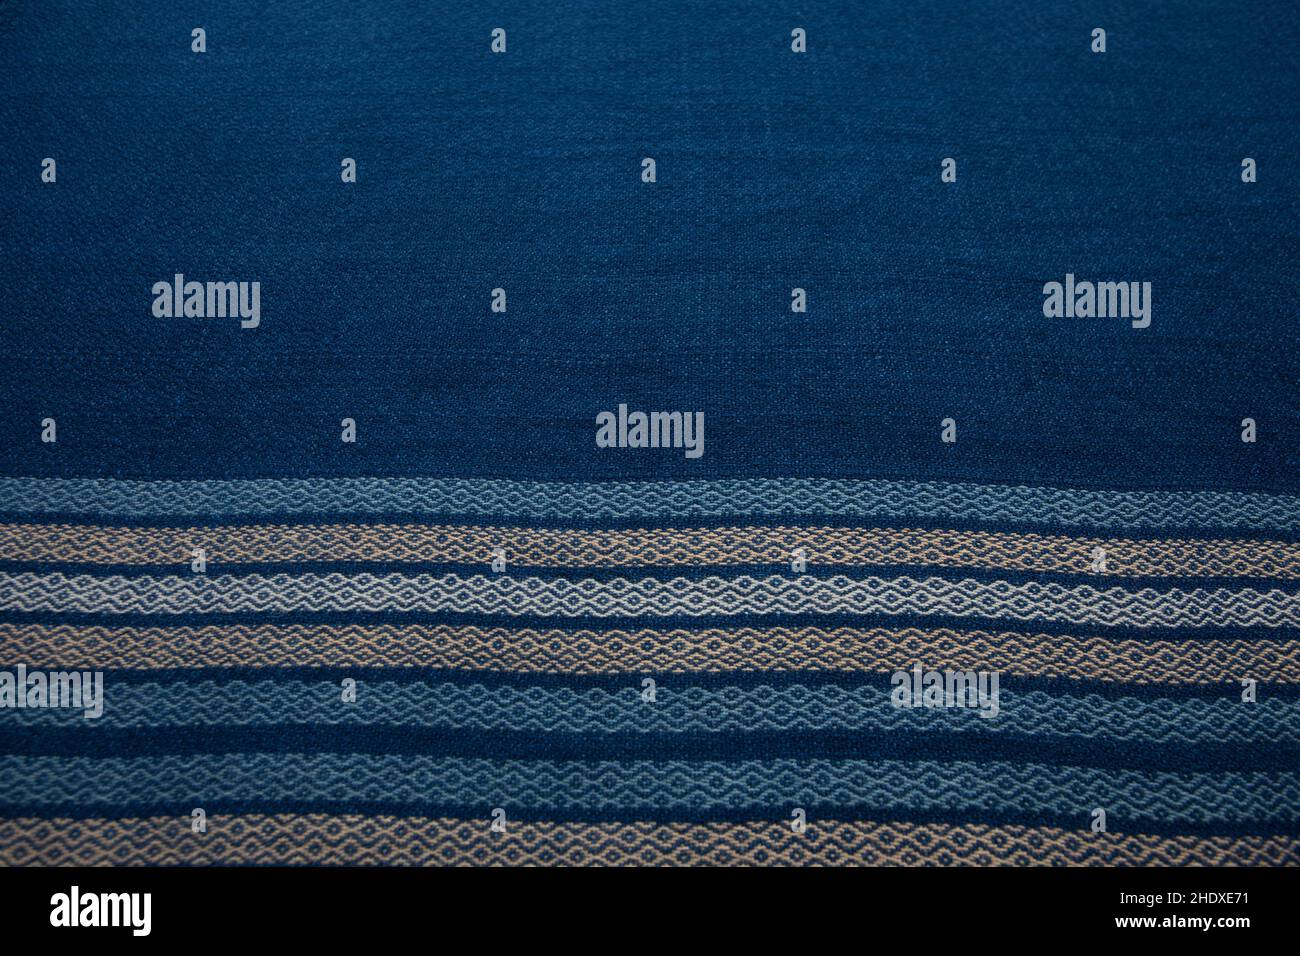 Primer plano de textura de mantón de rayas tejidas a mano, algodón tailandés teñido indigo Foto de stock